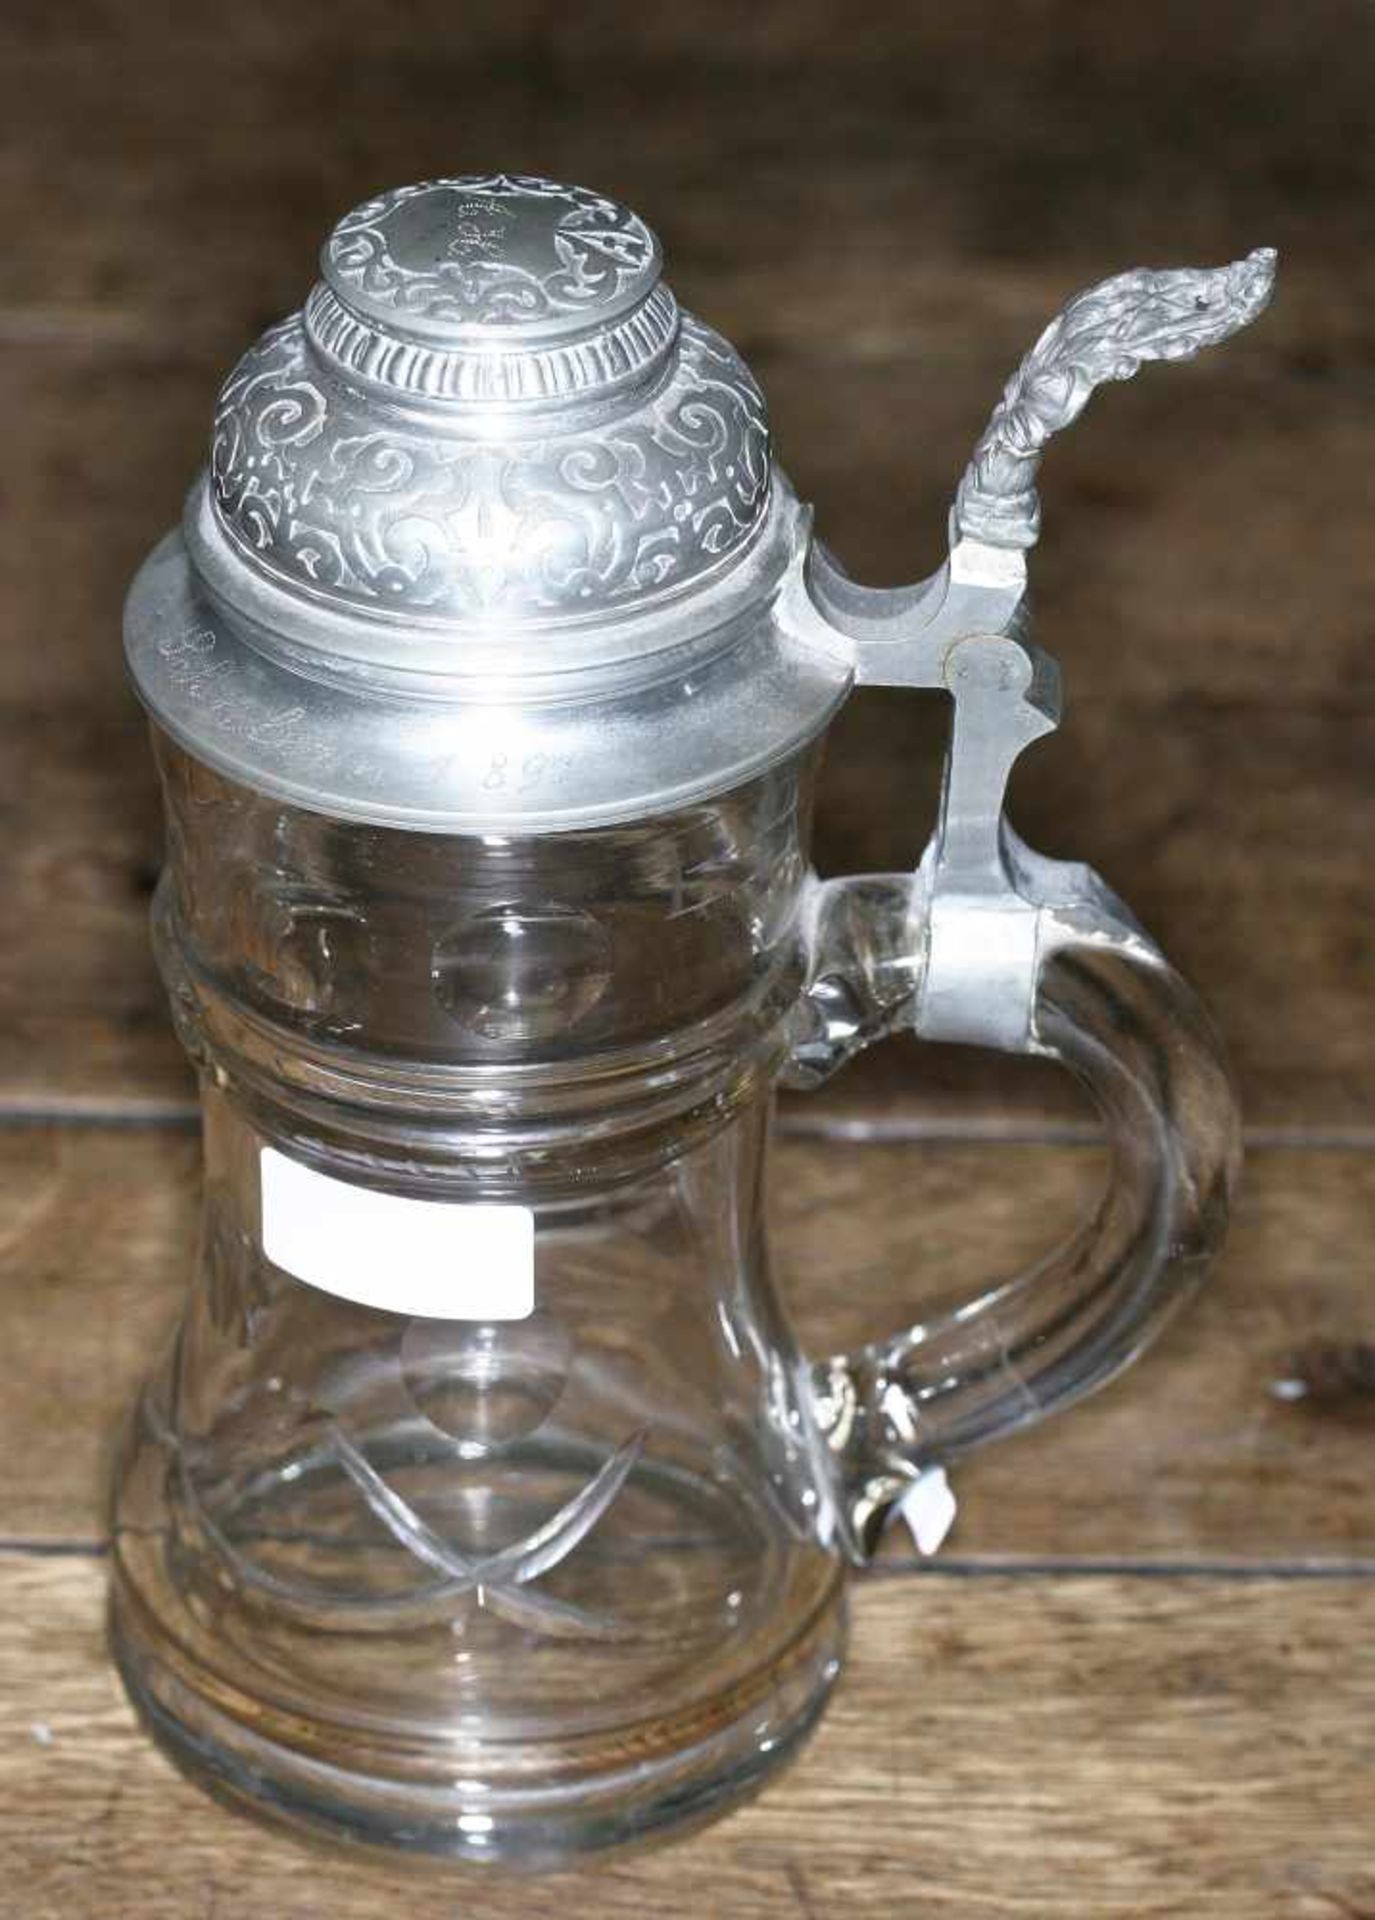 Glaskrug mit Schliffdekor und Zinndeckel, dat. 1897